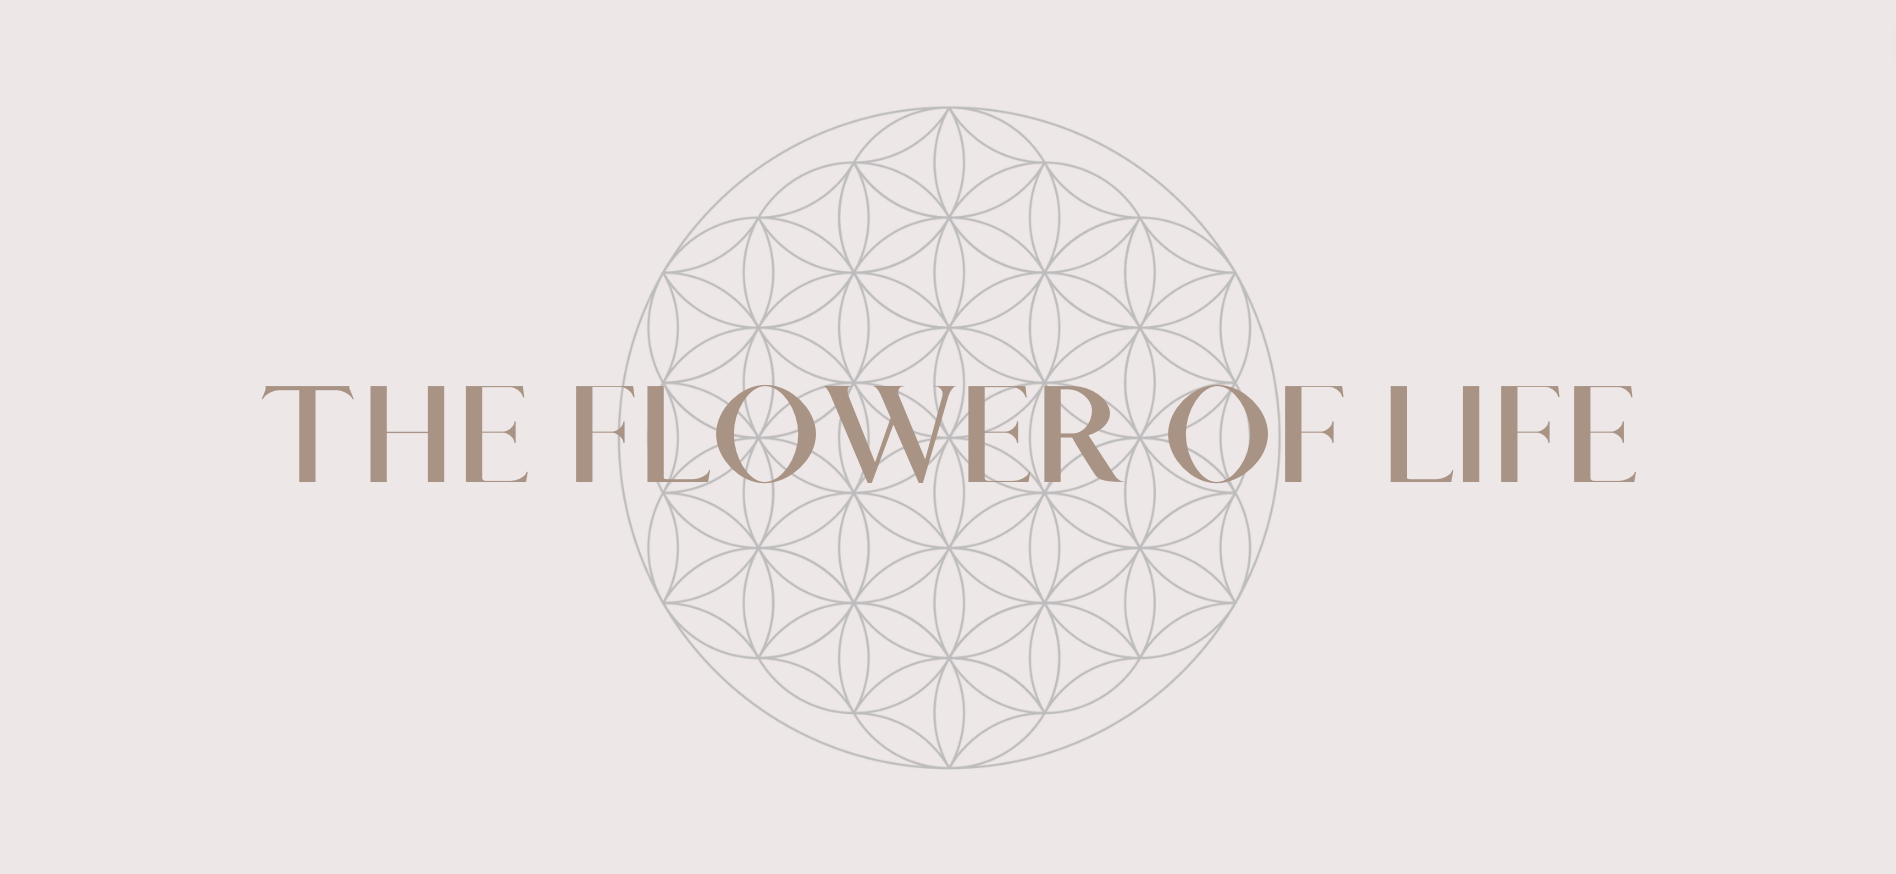 flower of life